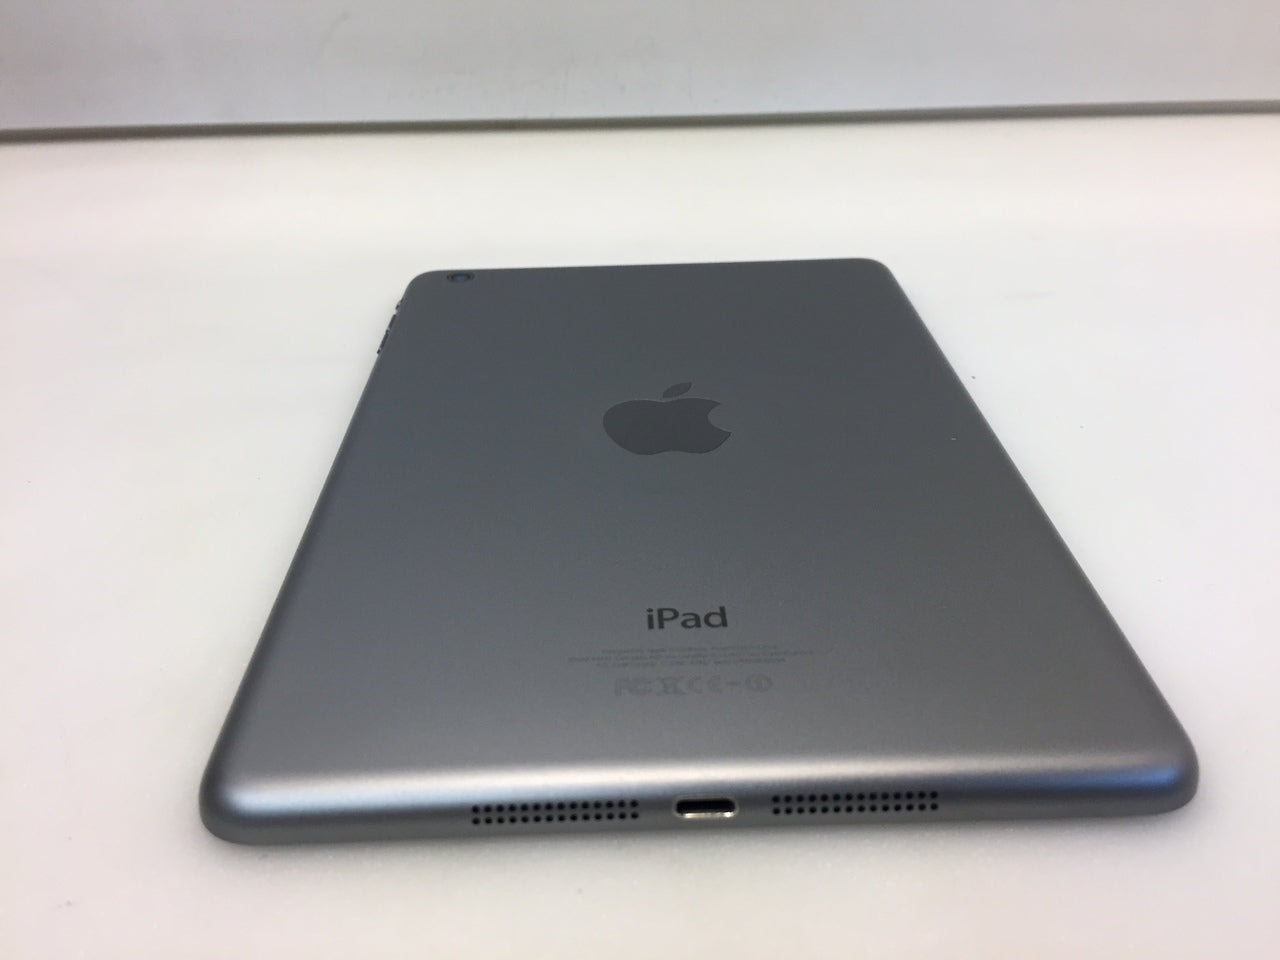 Apple iPad mini 1st Gen. 16GB, Wi-Fi, 7.9in - Space Gray MF432LL/A